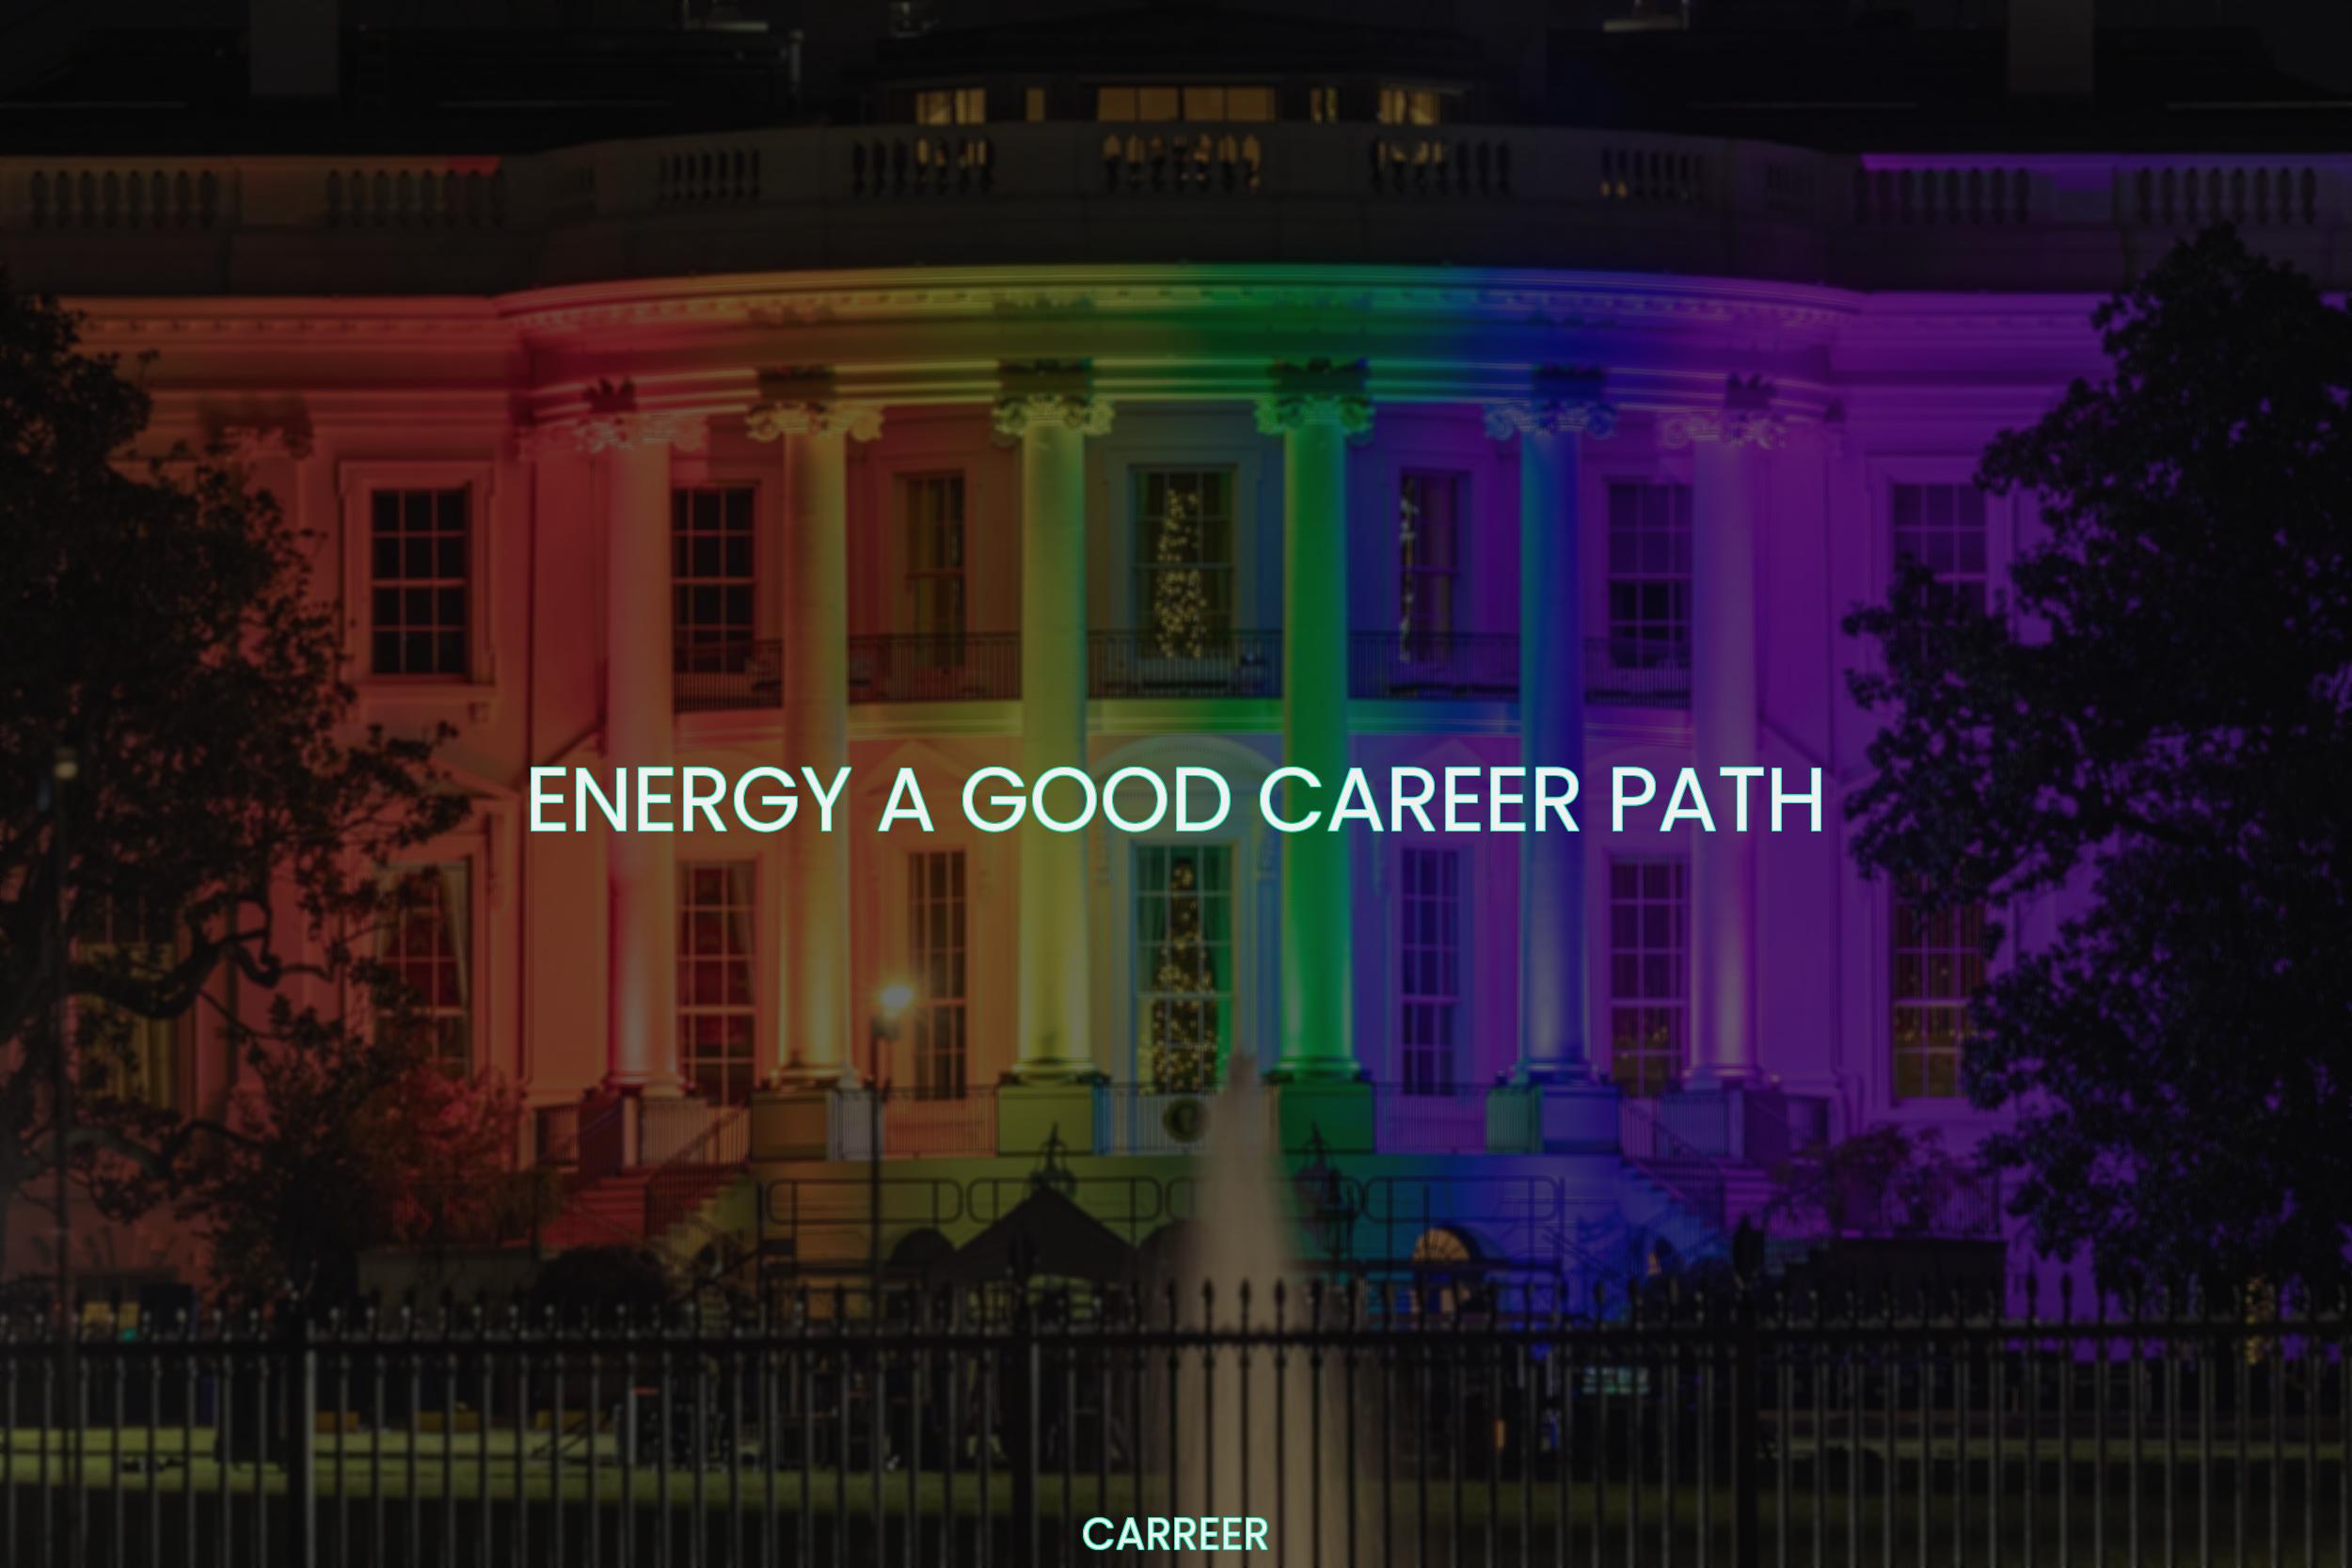 Energy a good career path